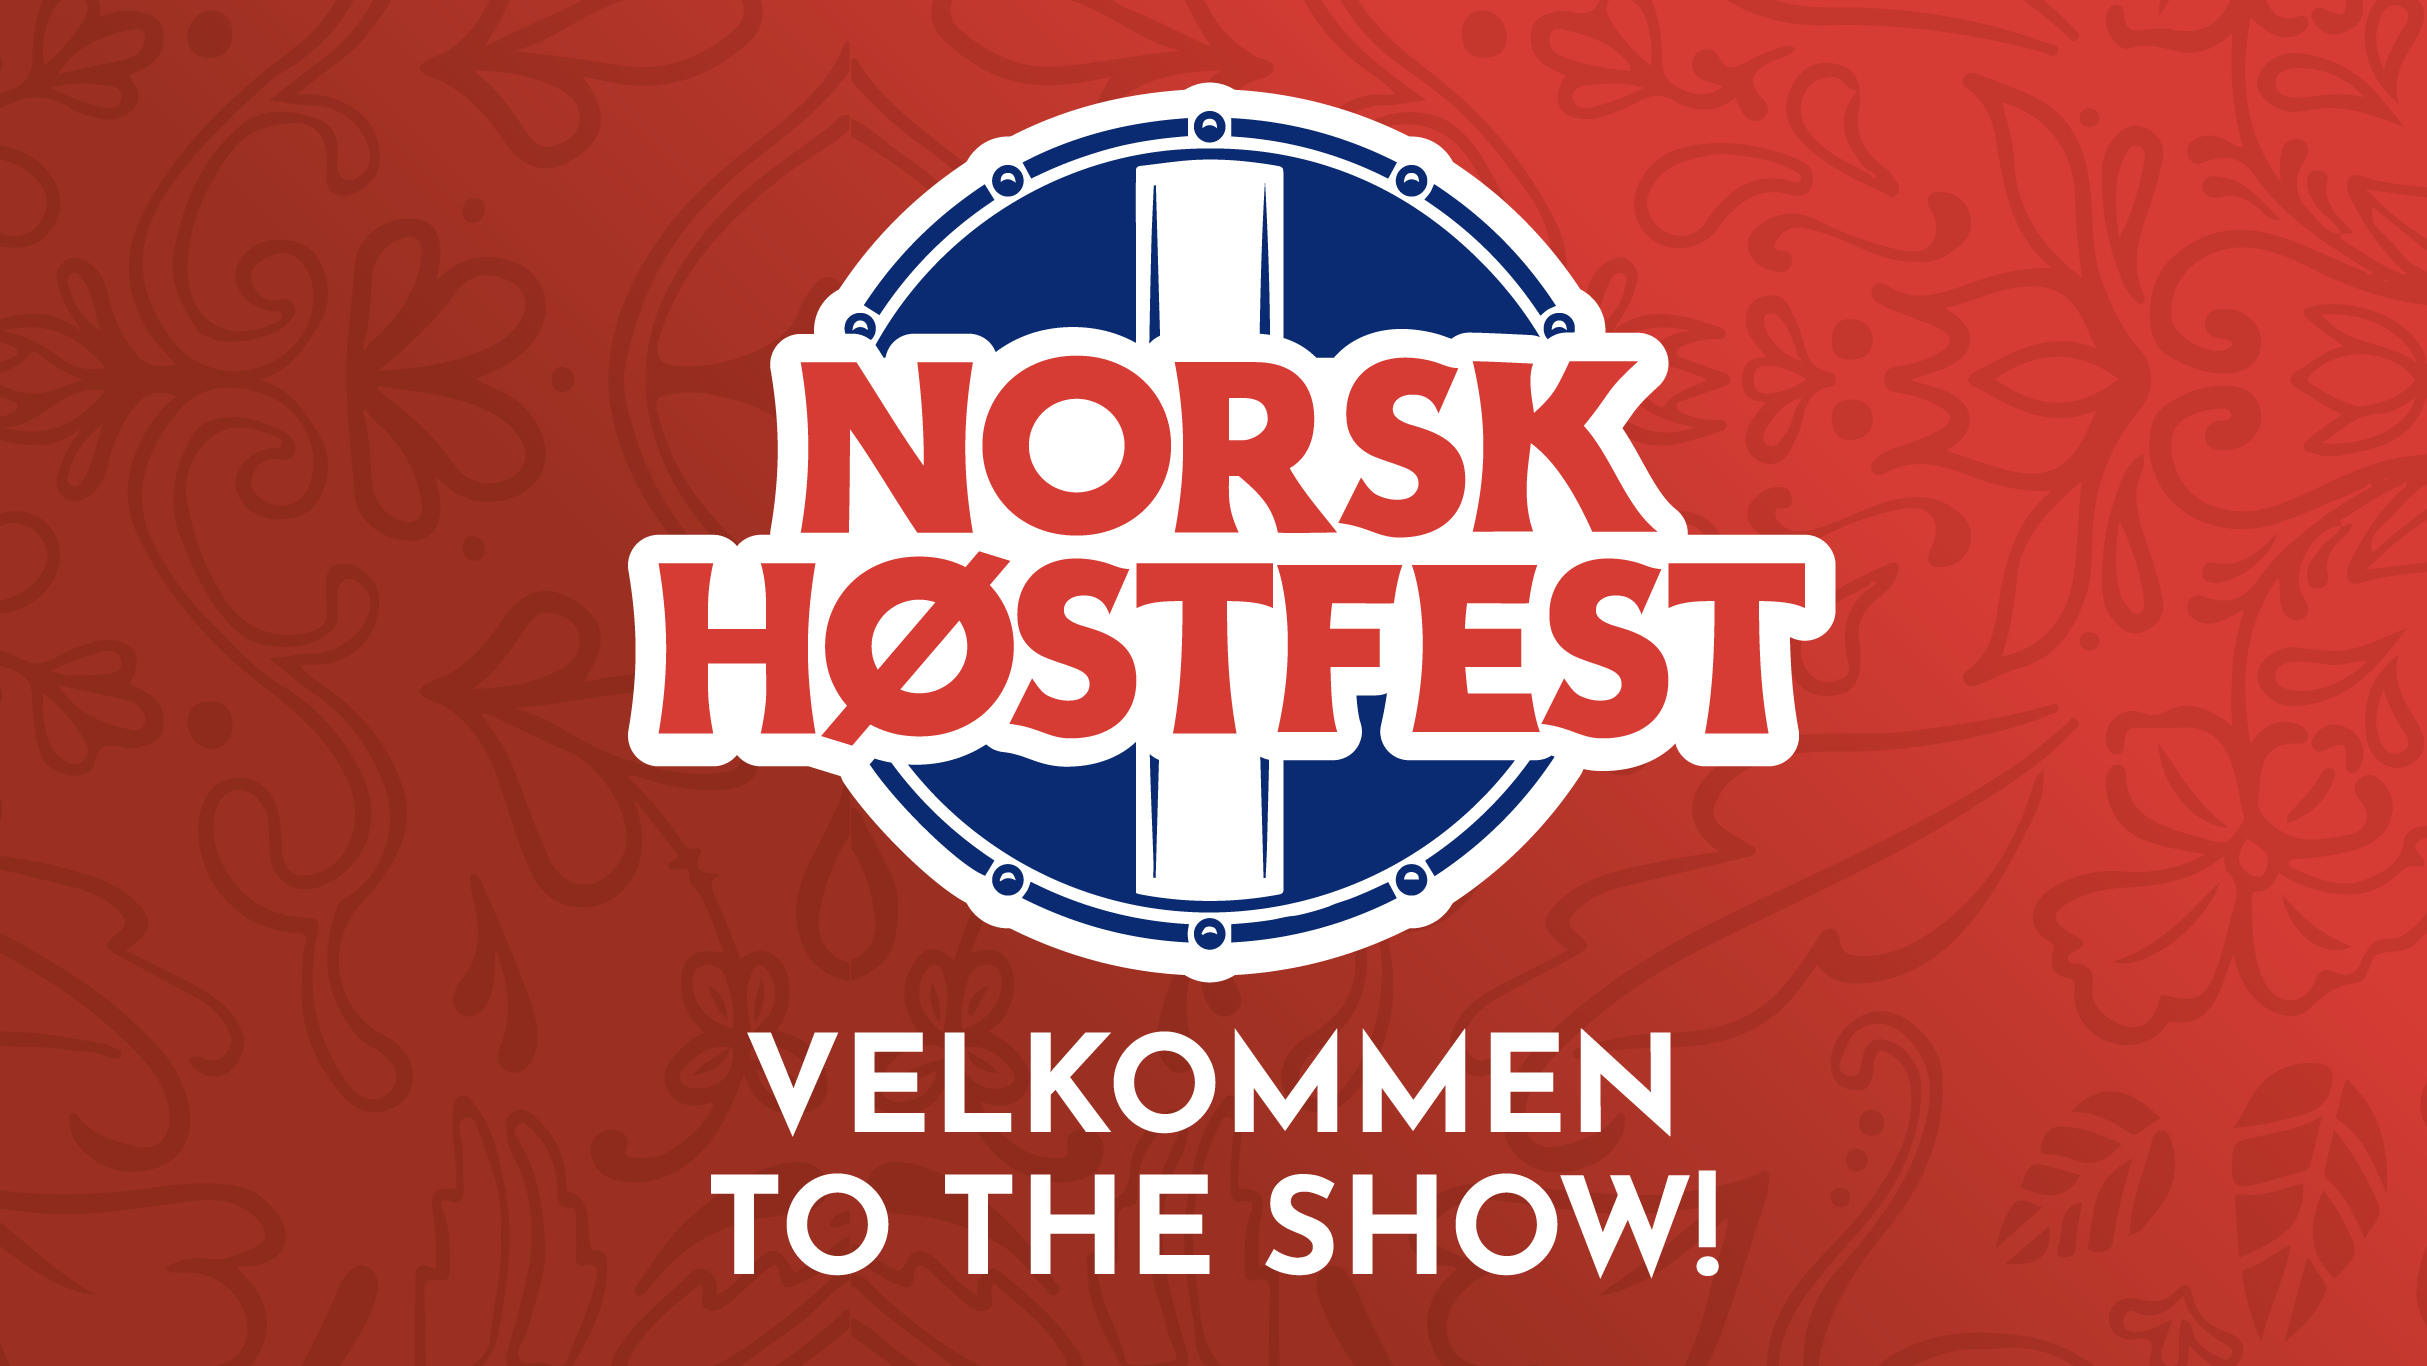 Norsk Hostfest presale information on freepresalepasswords.com